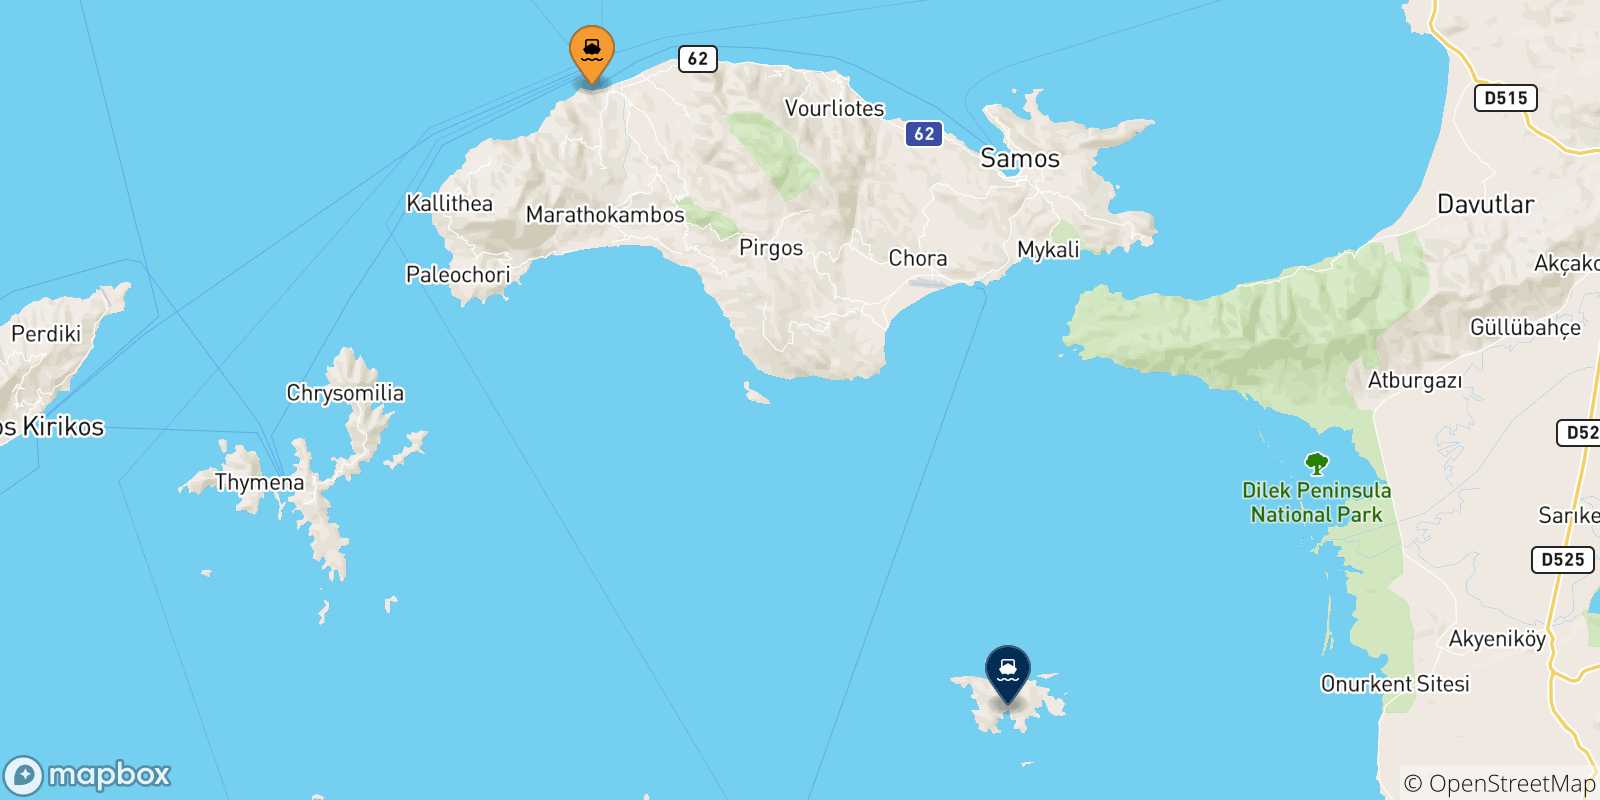 Mappa delle possibili rotte tra le Isole Egeo Nord Orientale e Agathonisi